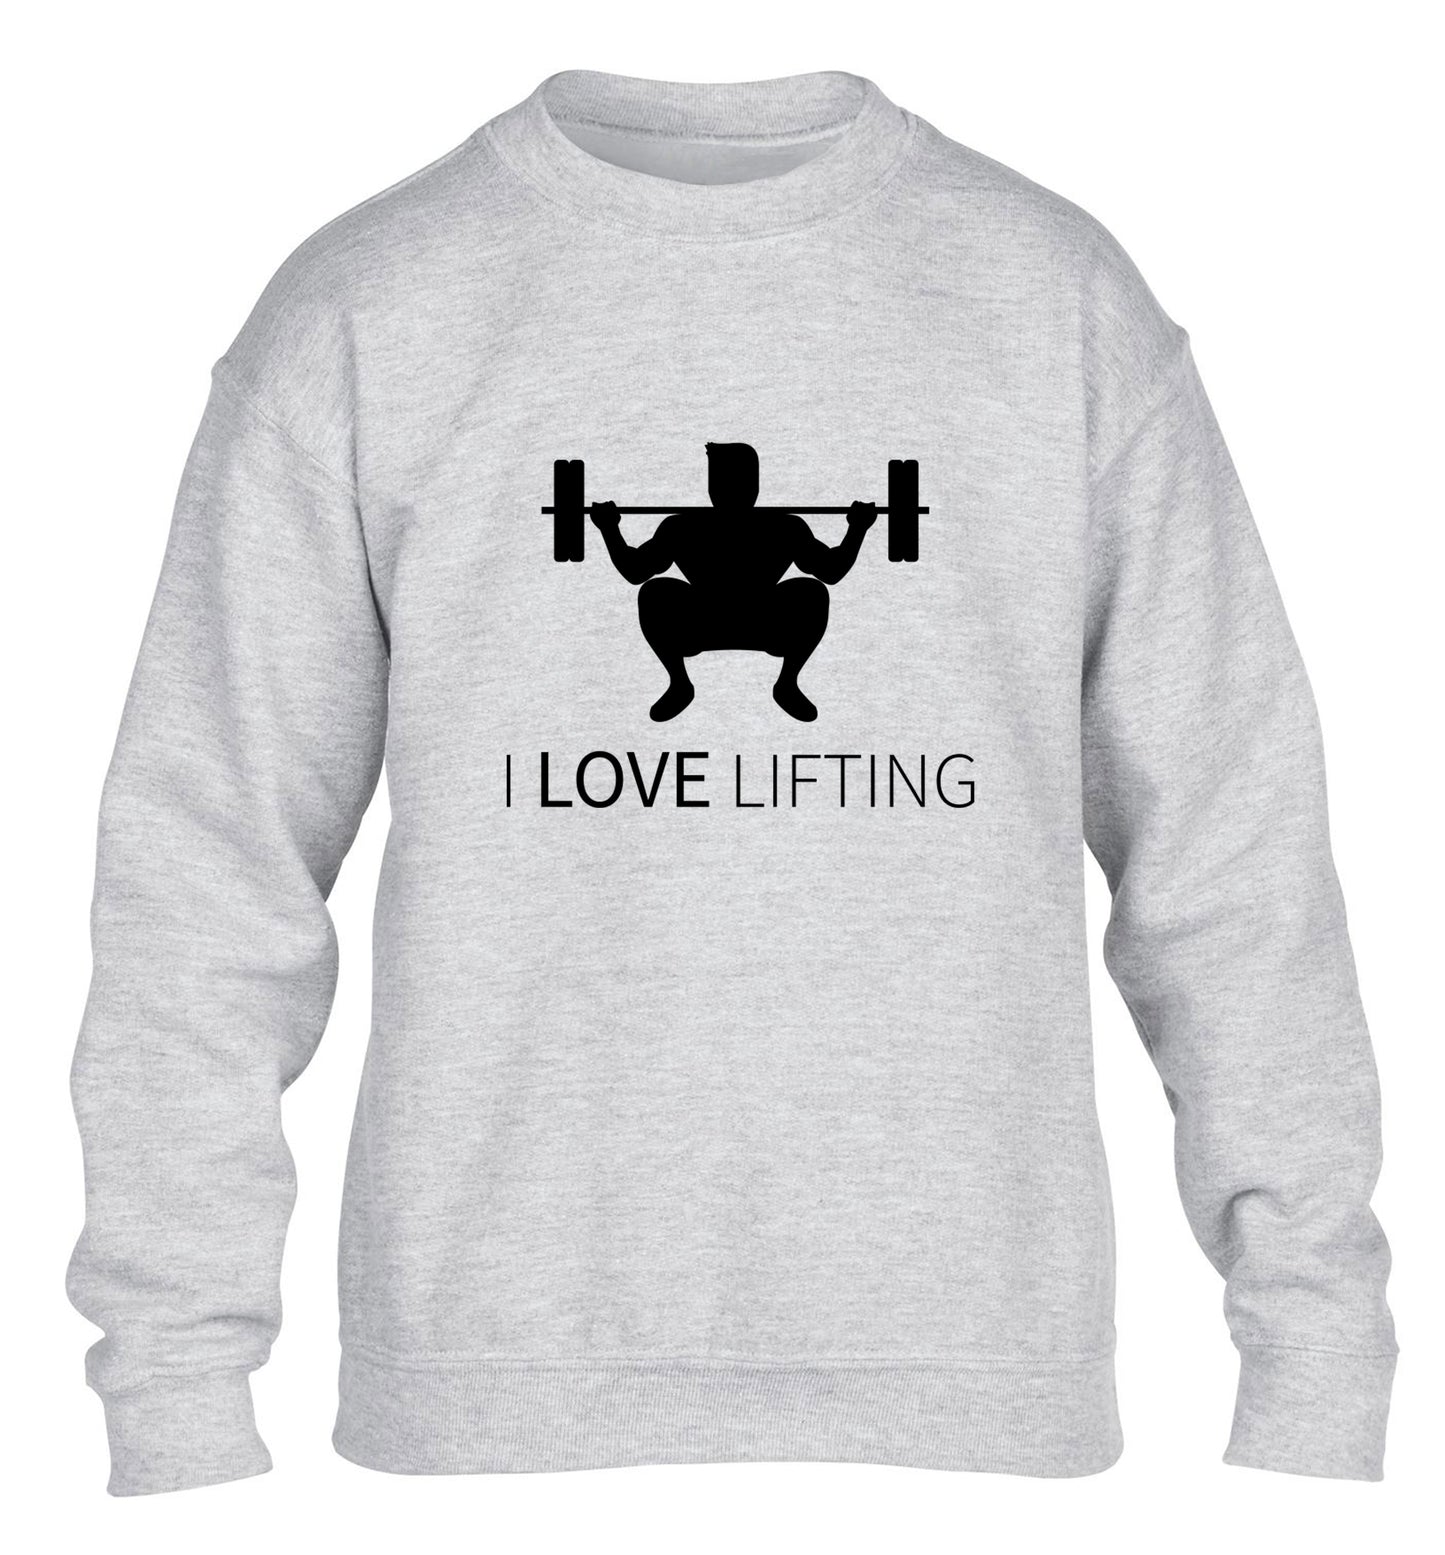 I Love Lifting children's grey sweater 12-13 Years